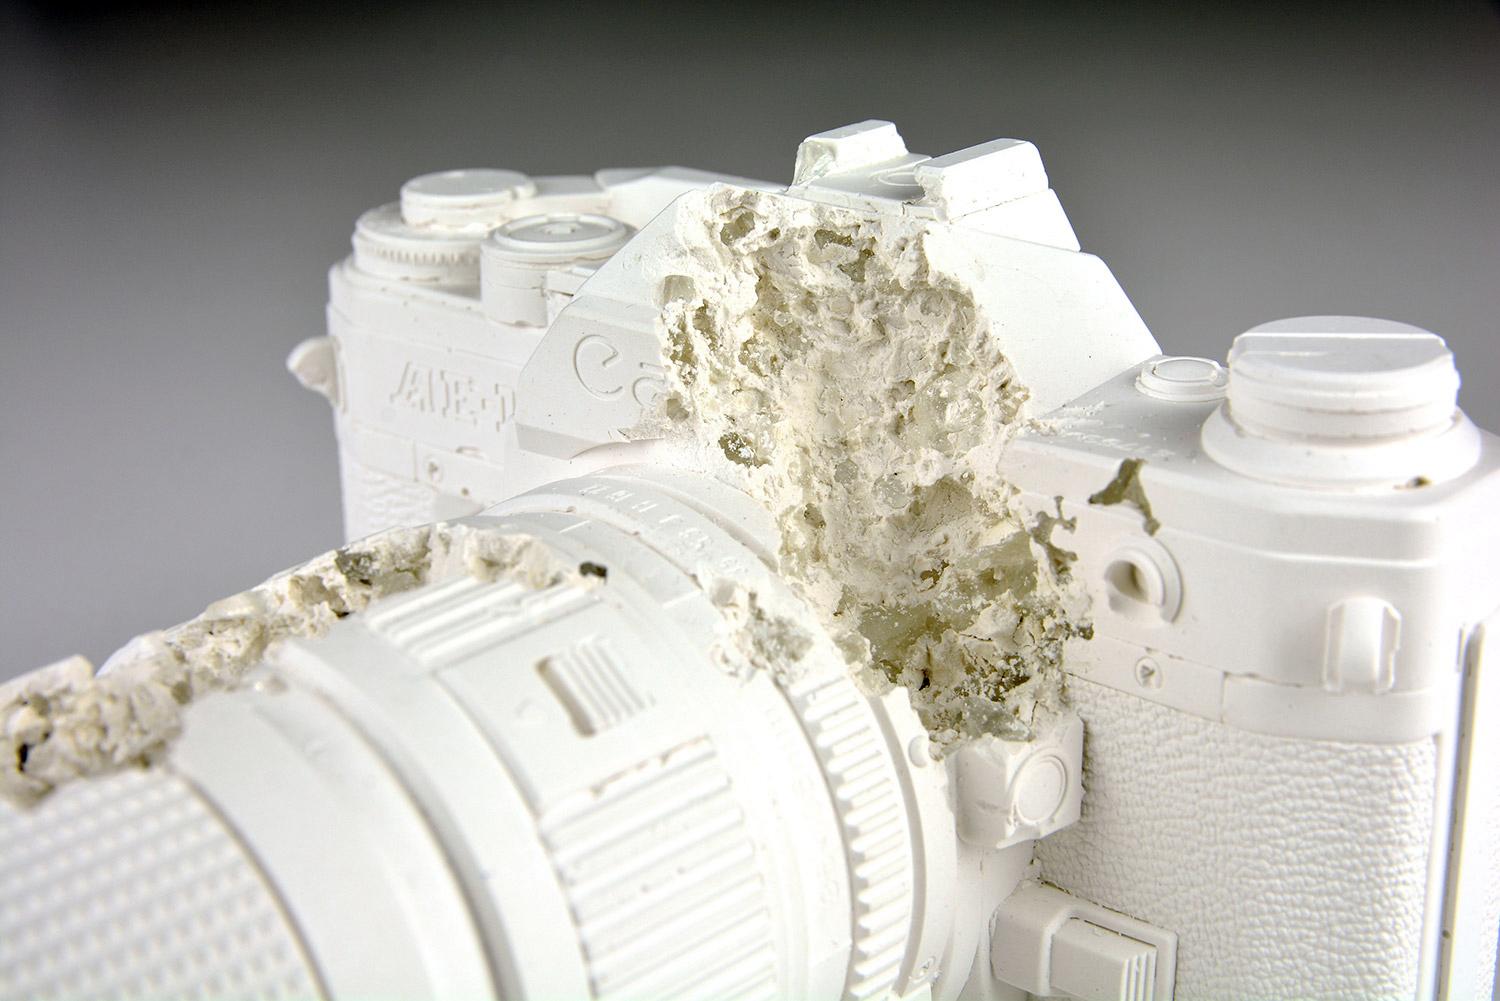 FUTURE RELIC 02 - Sculpture en édition limitée - Design d'art moderne - Photographie 35 mm - Concept Canon 1